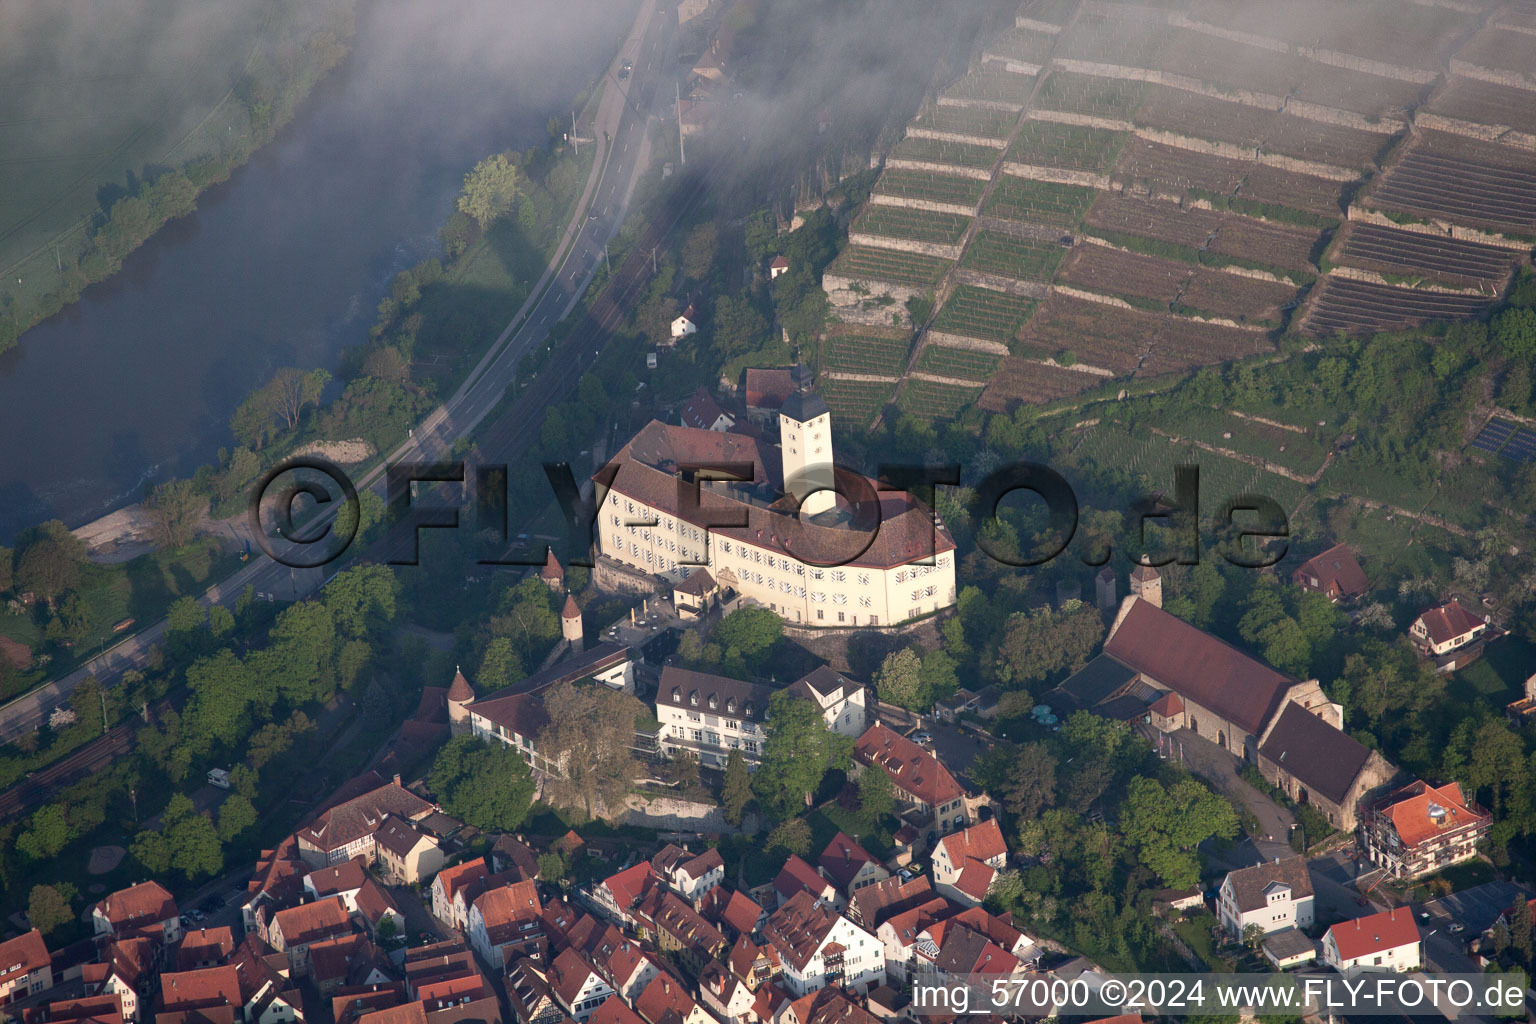 Photographie aérienne de Château de Horneck dans le brouillard du matin à Gundelsheim dans le département Bade-Wurtemberg, Allemagne